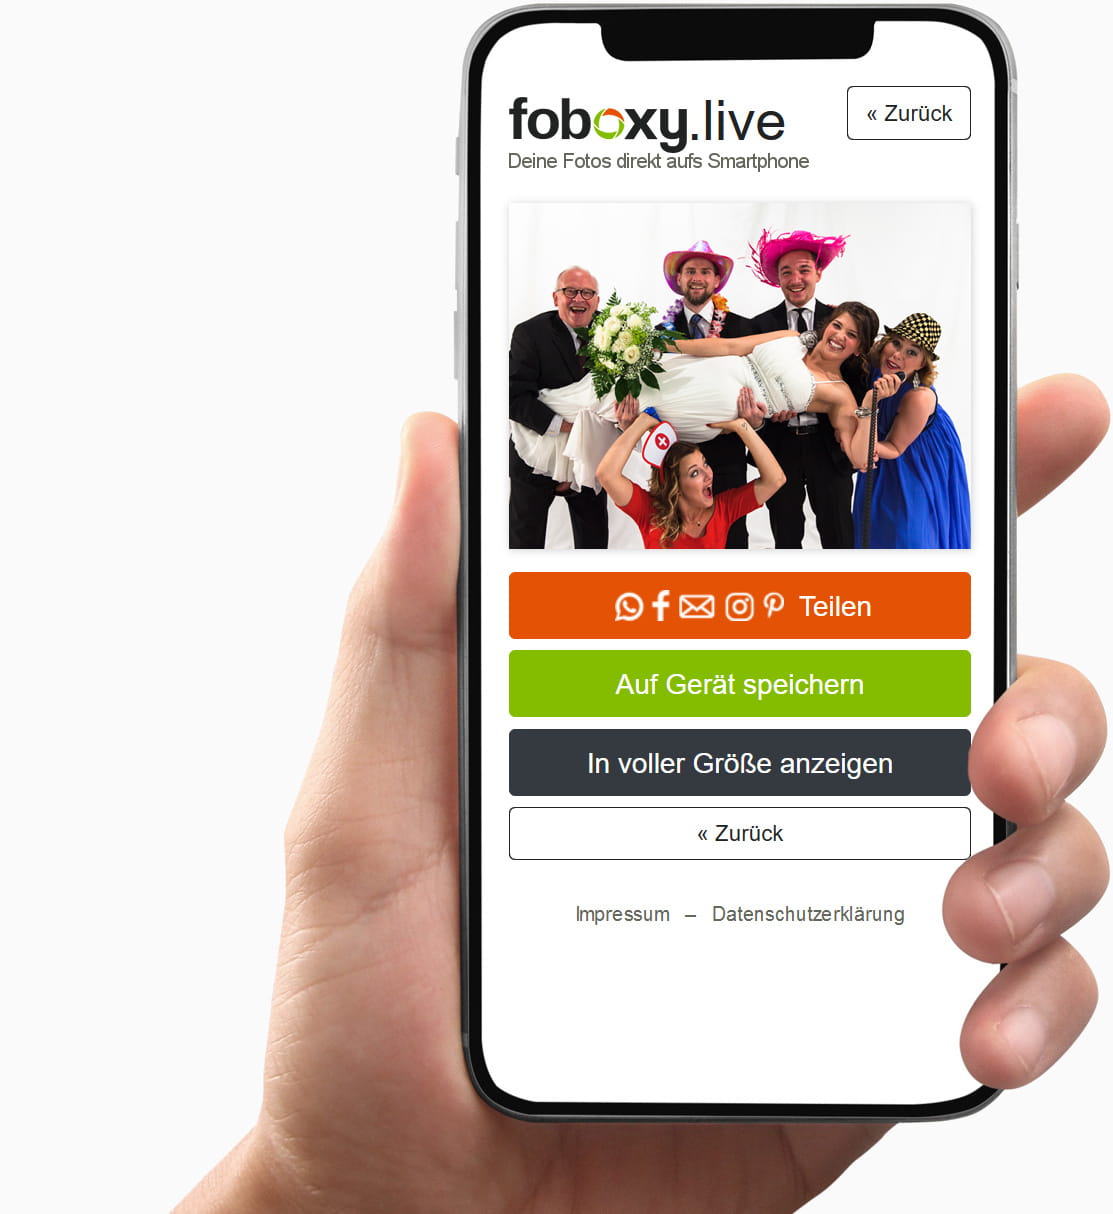 foboxy.live Ansicht auf dem Smartphone